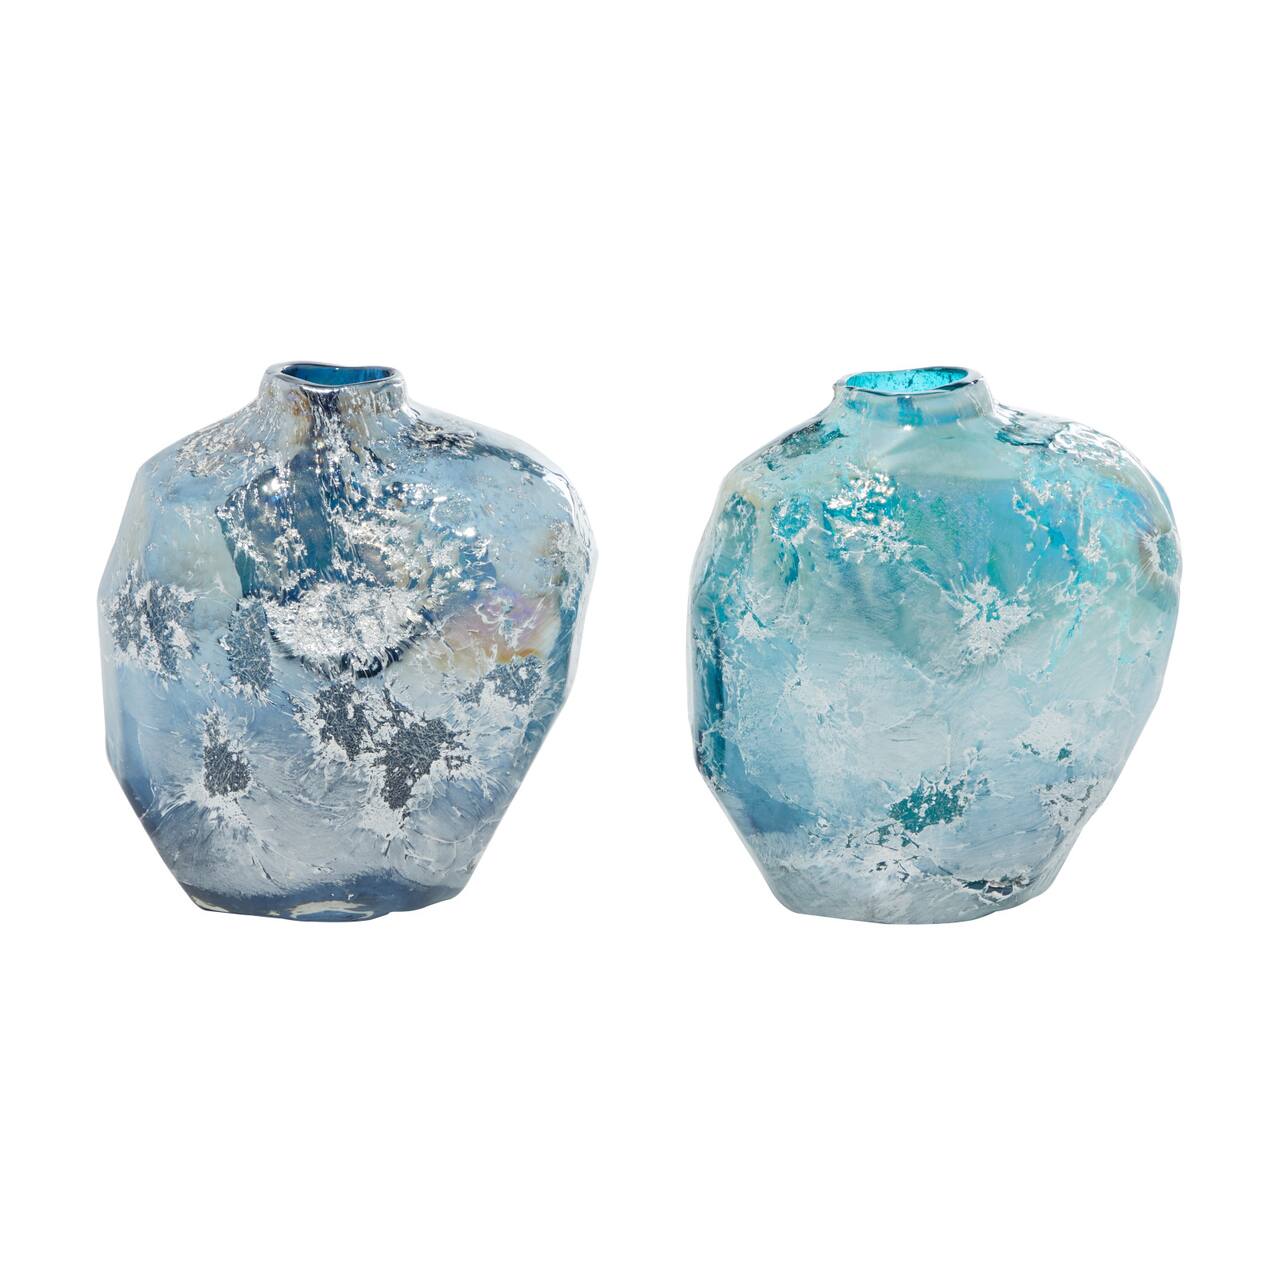 The Novogratz Blue Glass Contemporary Vase Set